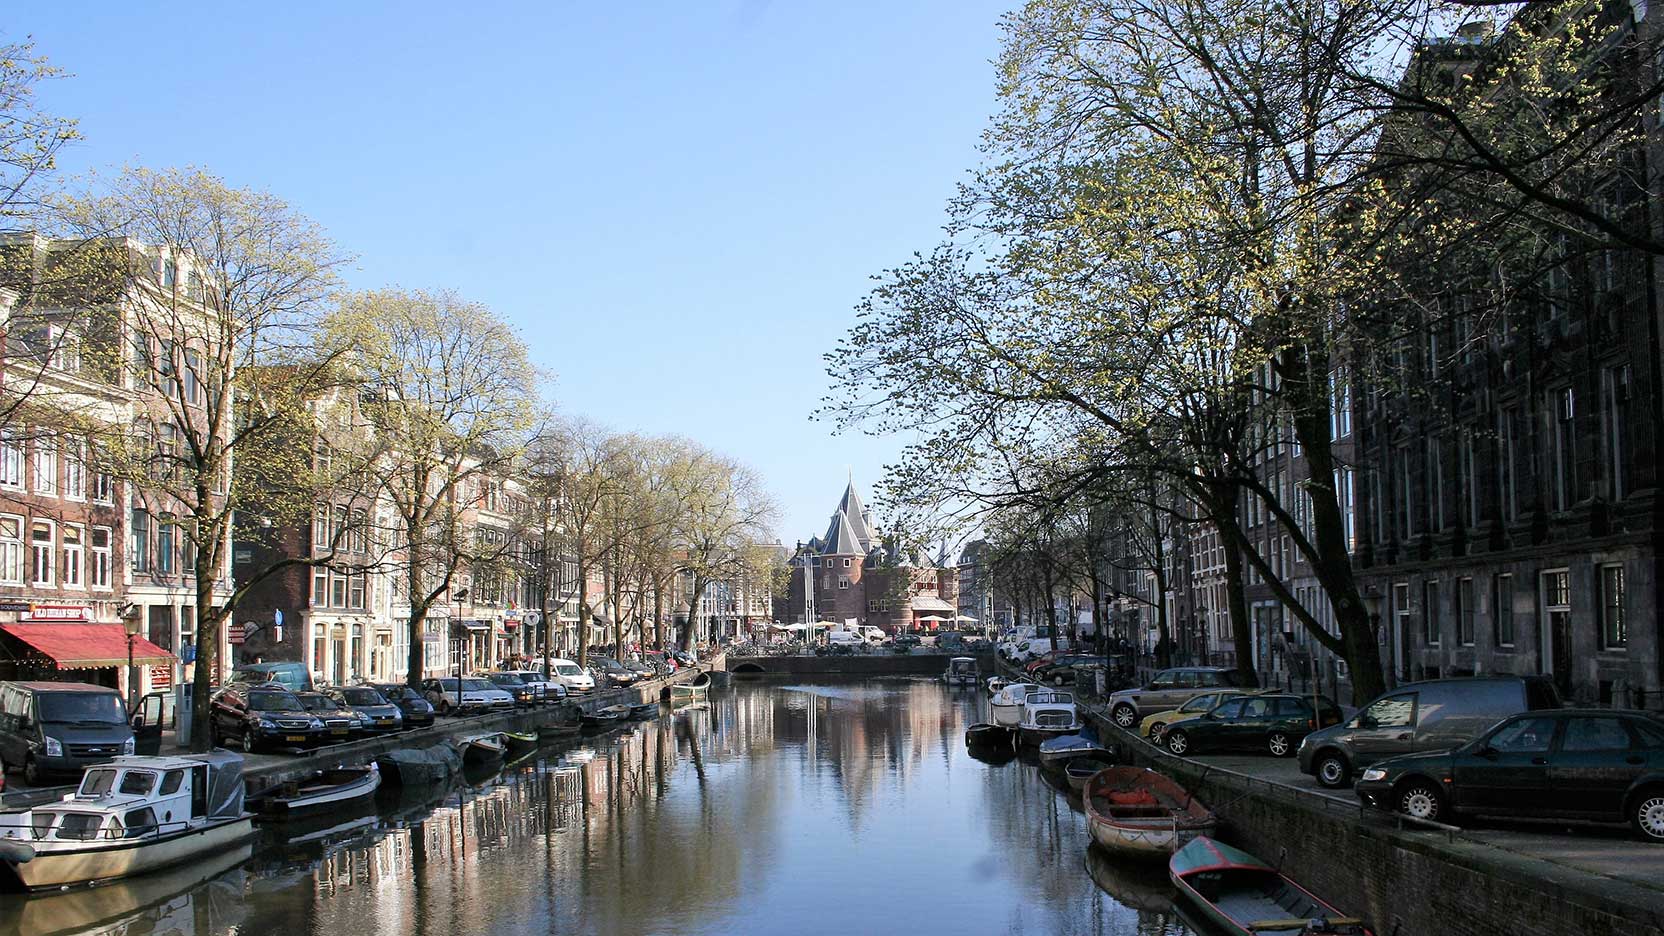 Kloveniersburgwal towards Nieuwmarkt, Amsterdam